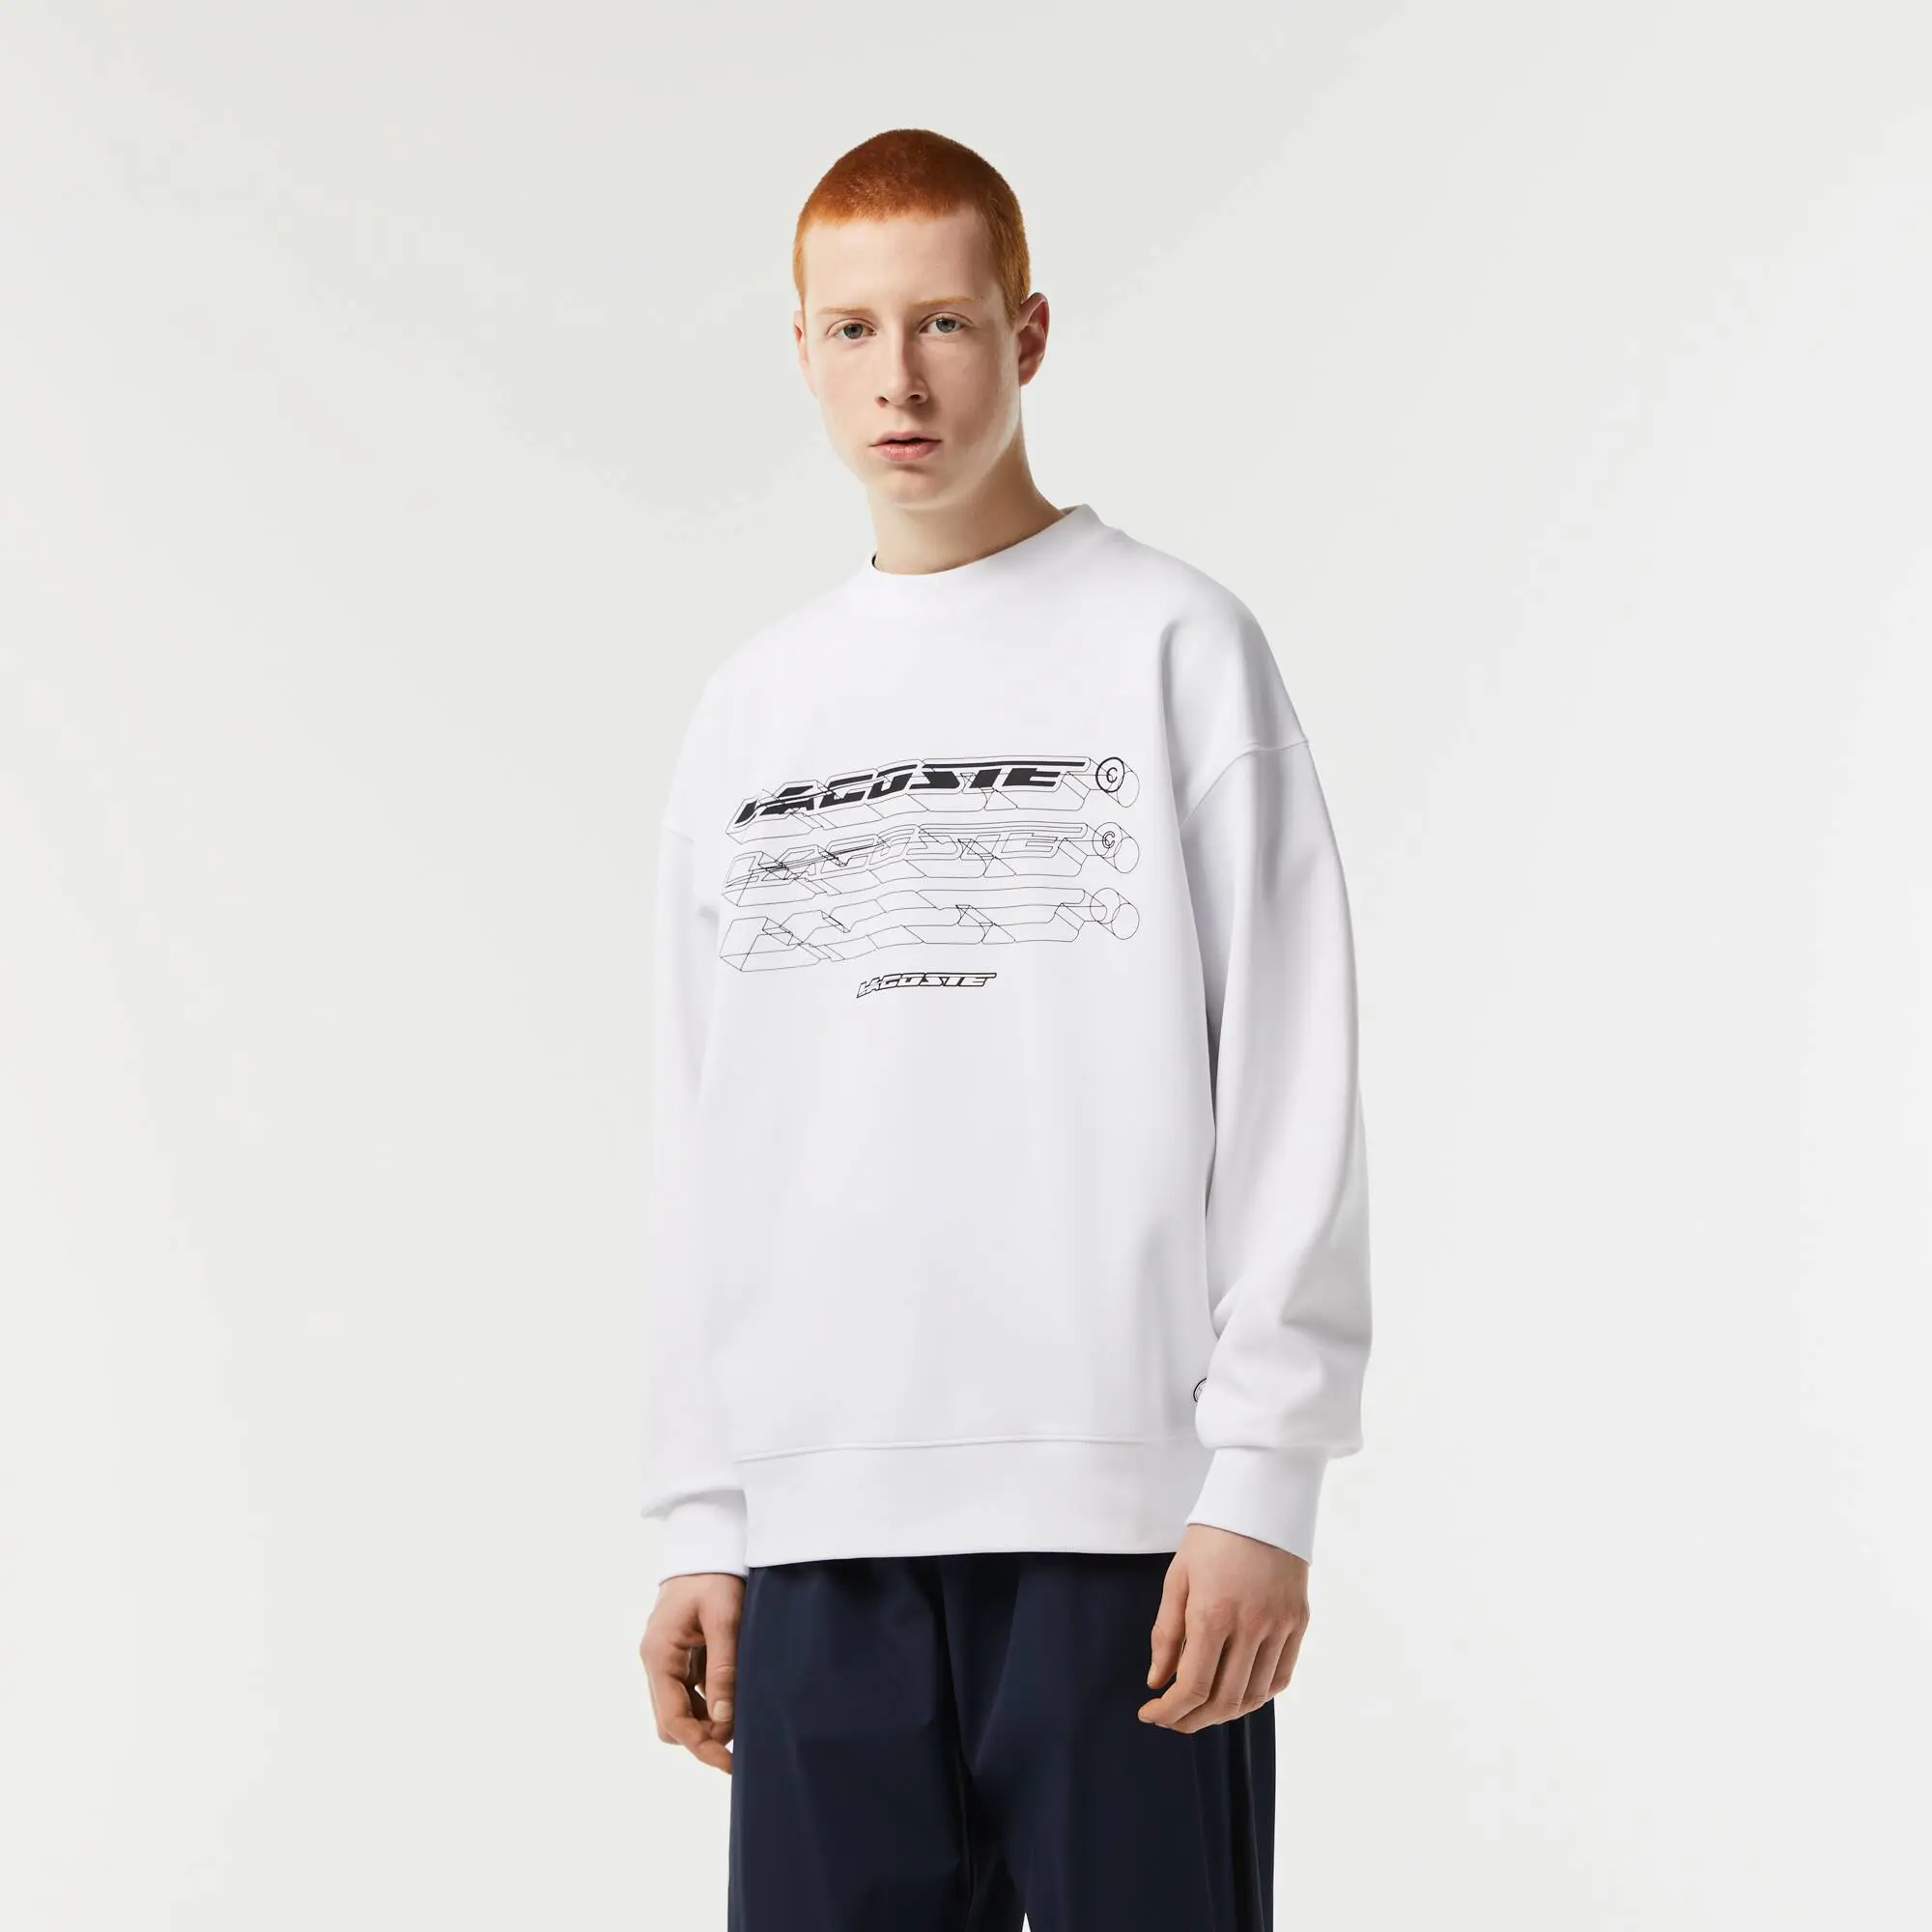 Lacoste Men’s Lacoste Loose Fit Branded Sweatshirt. 1